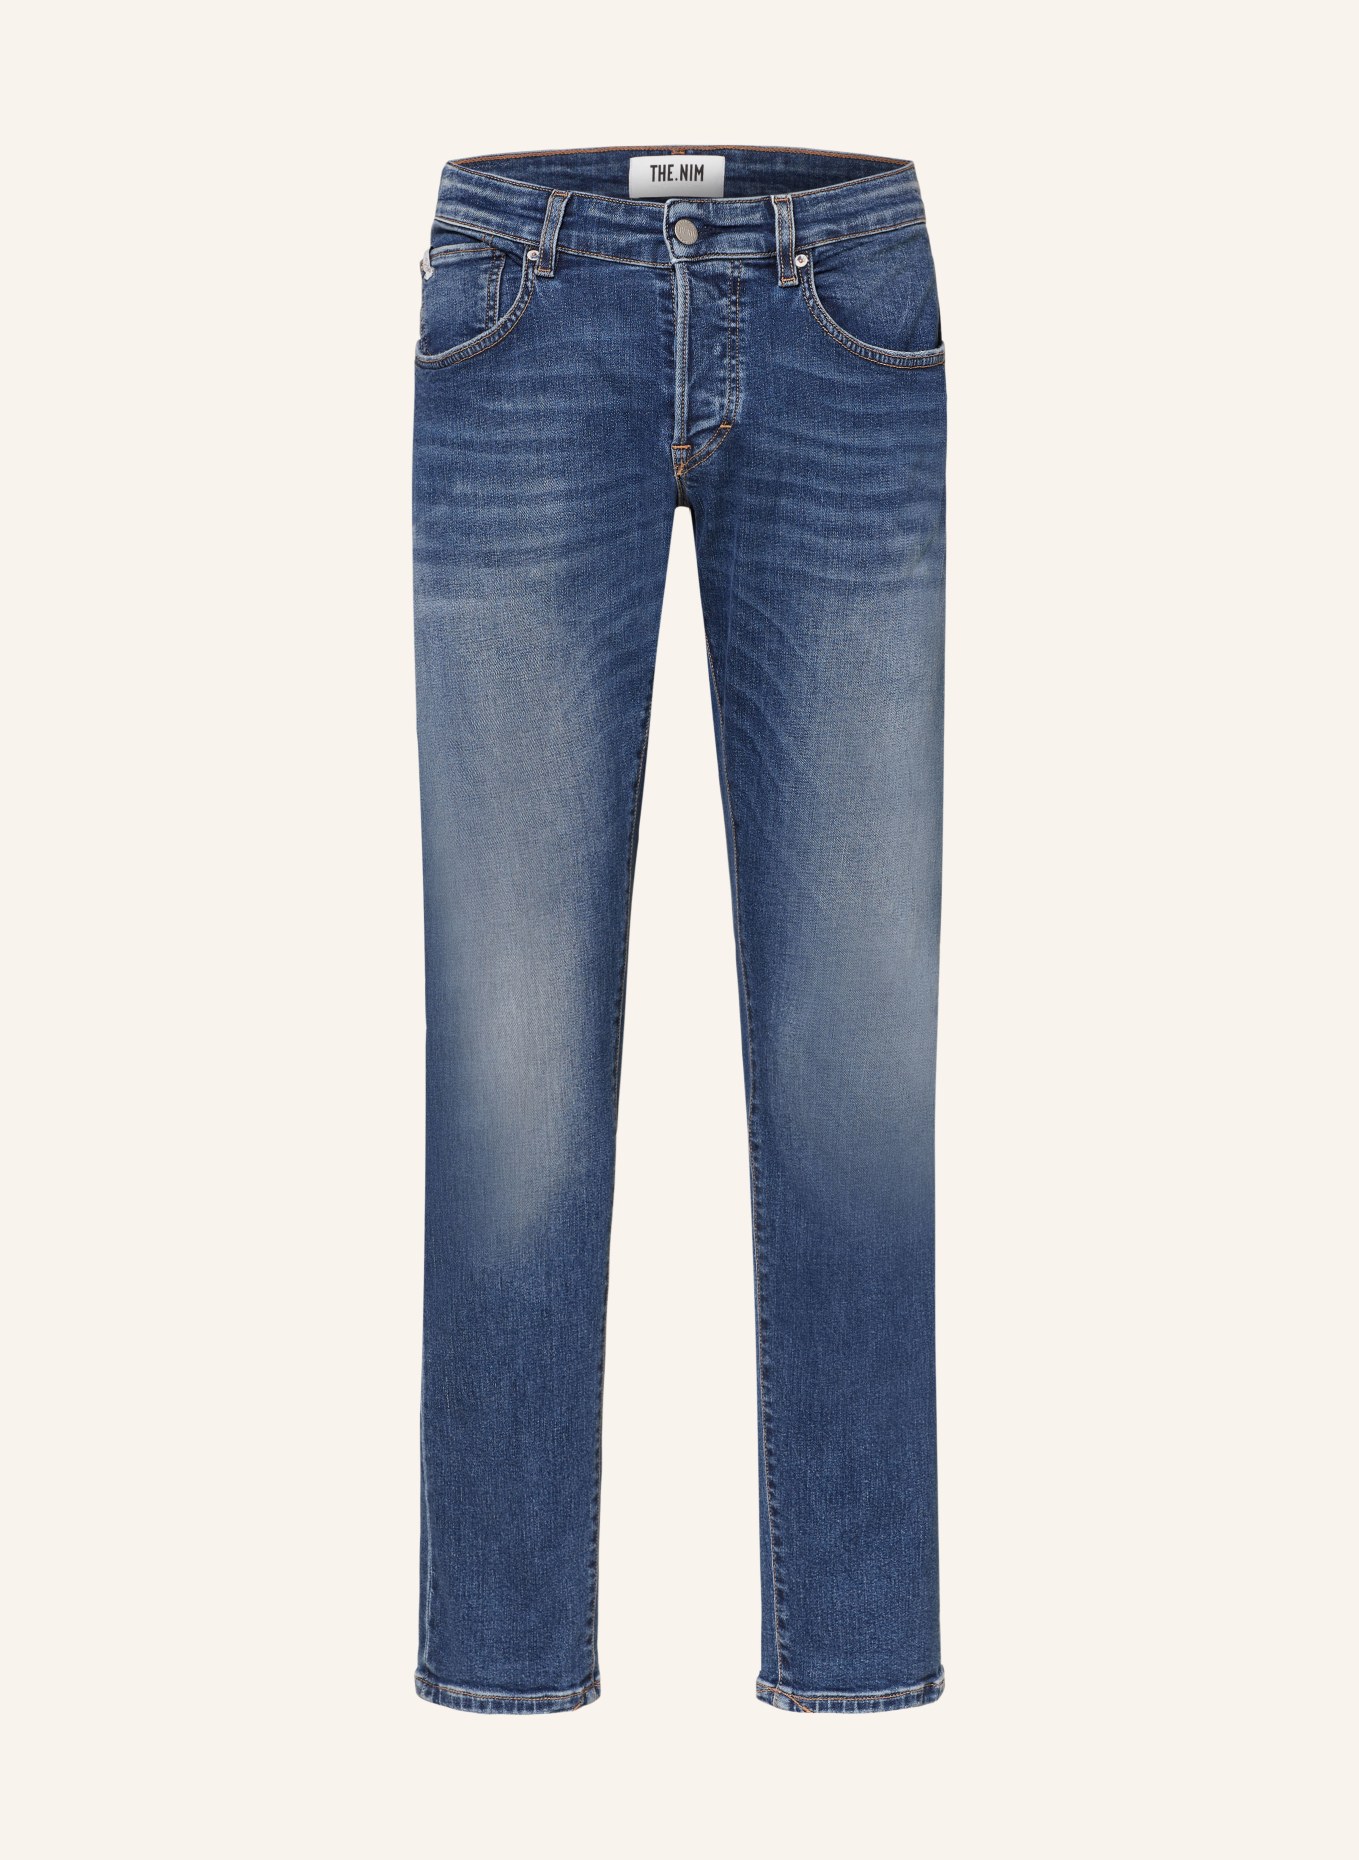 THE.NIM STANDARD Jeans DYLAN Slim Fit, Farbe: W432-MDM MEDIUM (Bild 1)